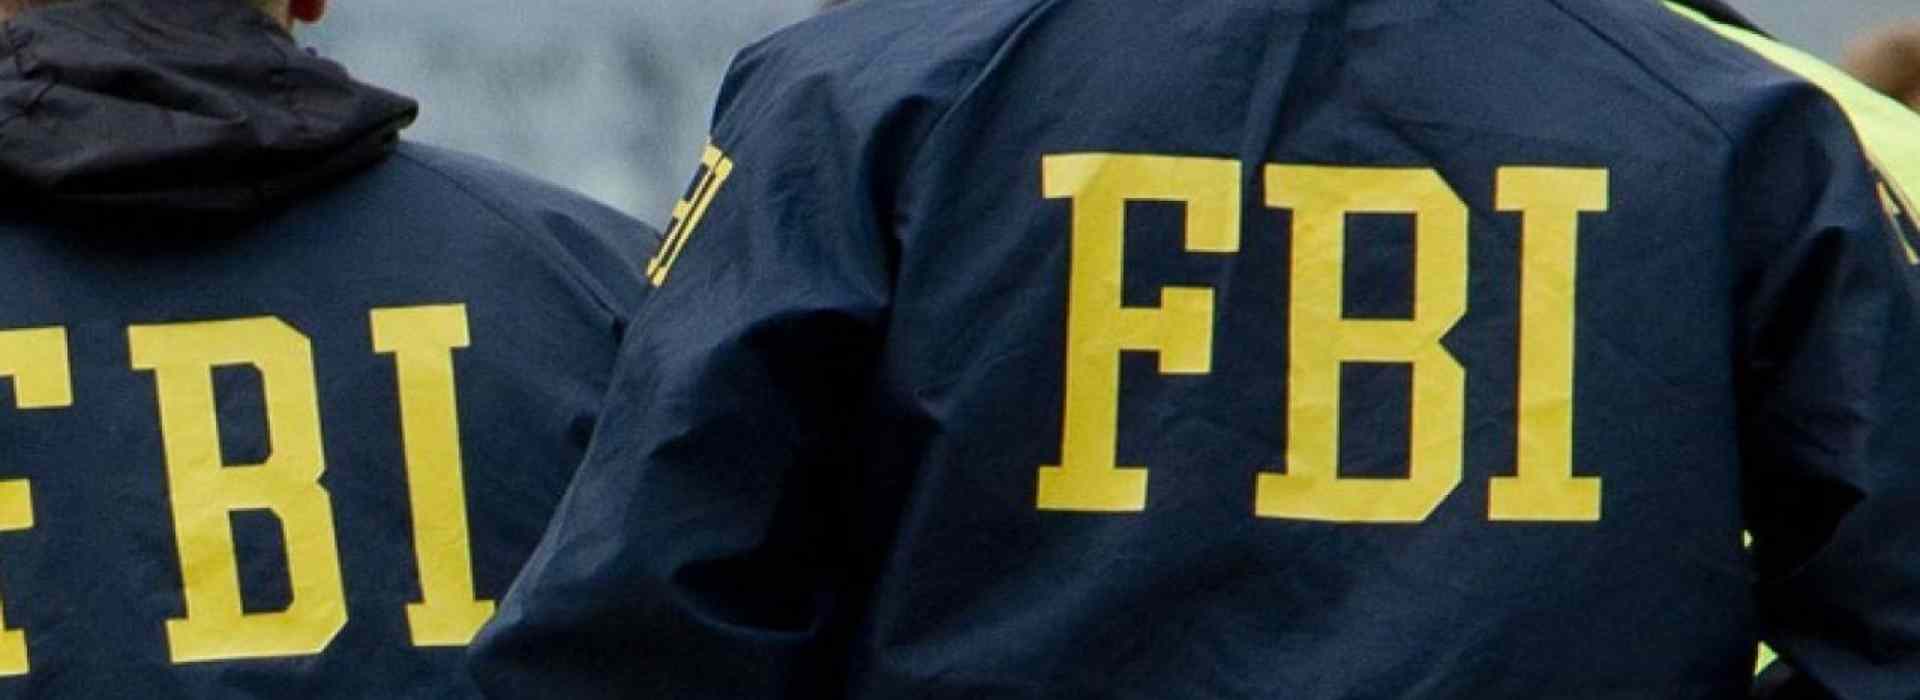 Agenti dell’Fbi a Gioia Tauro. Sequestro di armi e traffico di esseri umani in Ucraina